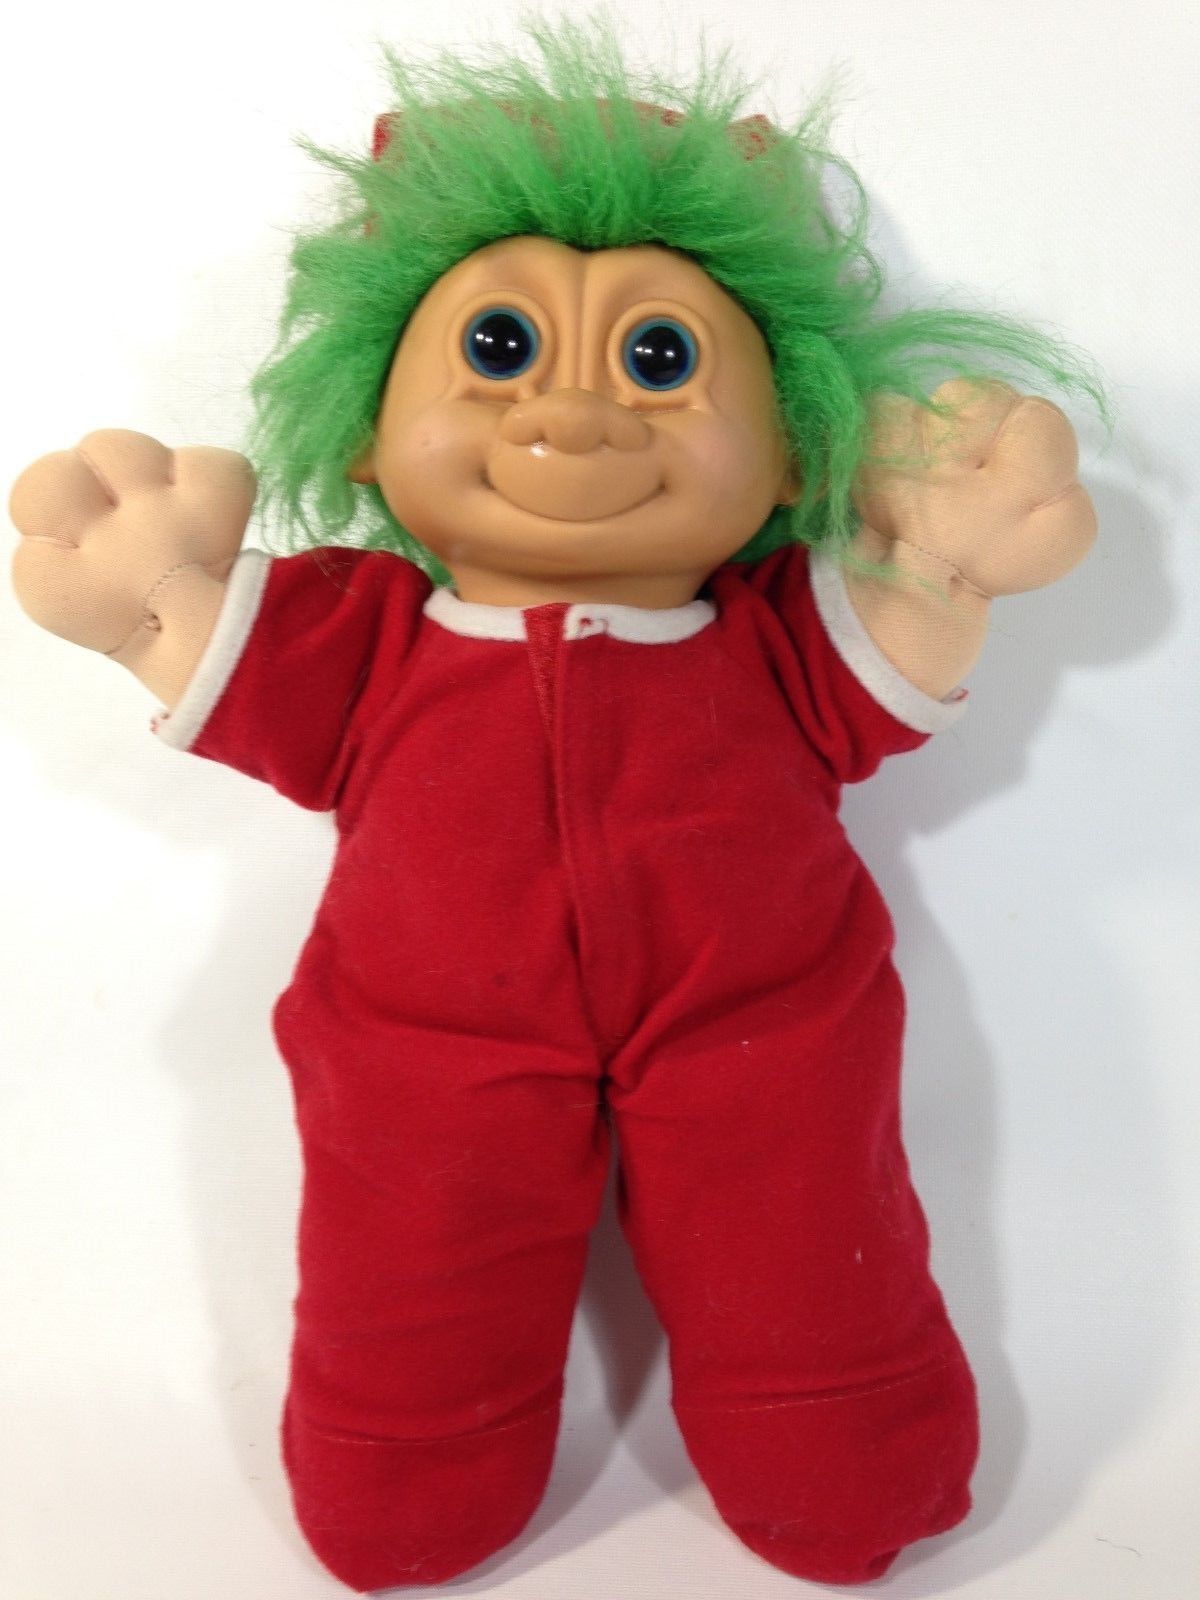 troll doll green hair